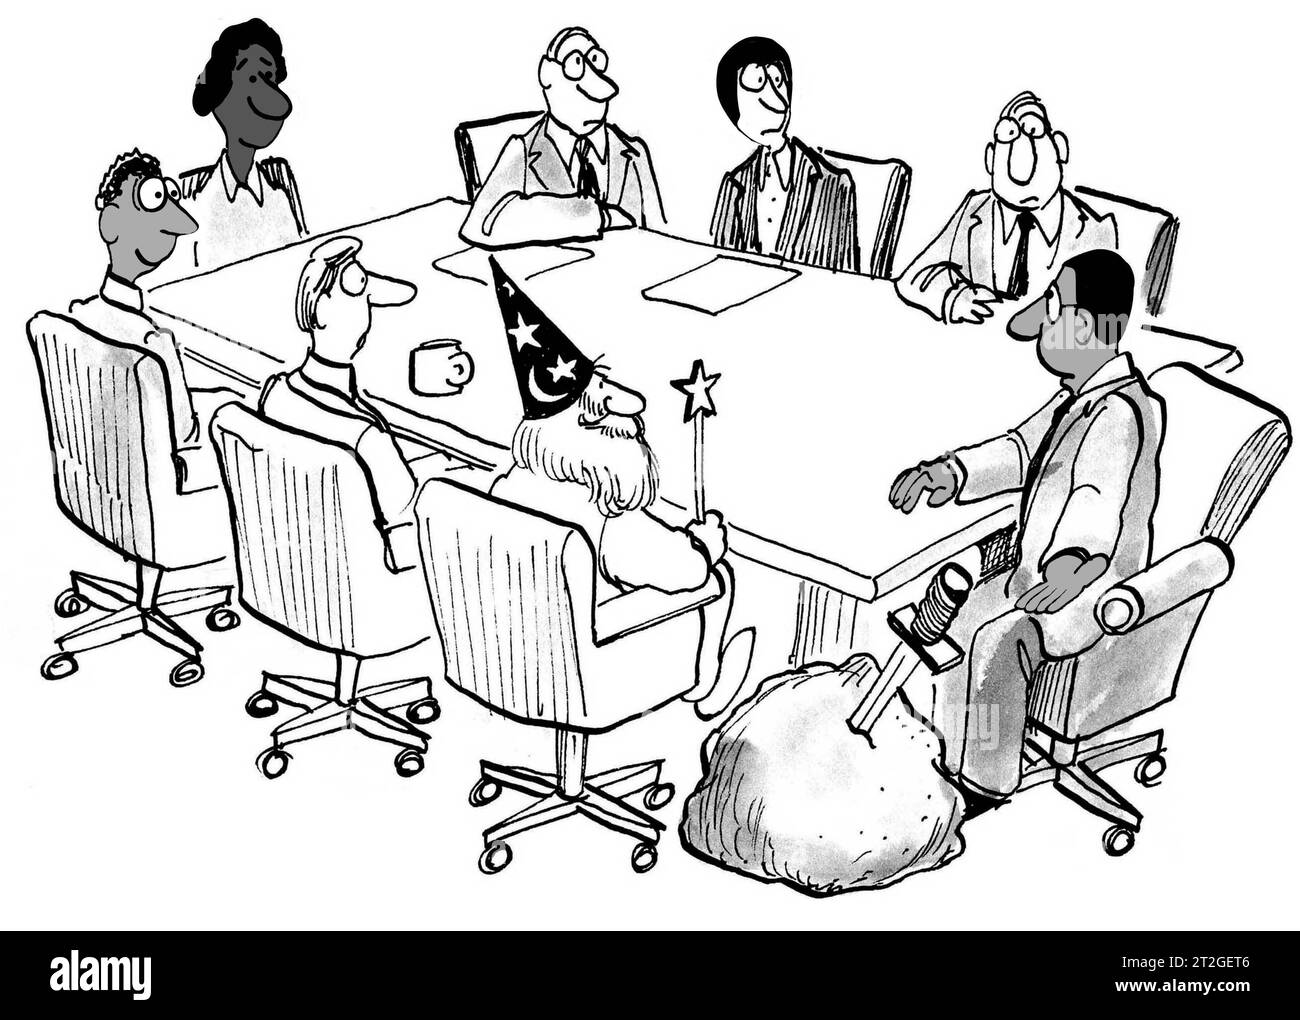 Il CEO esecutivo nero si offre di far sì che gli sfidanti nella sua azienda cerchino di accettare il suo lavoro. Foto Stock